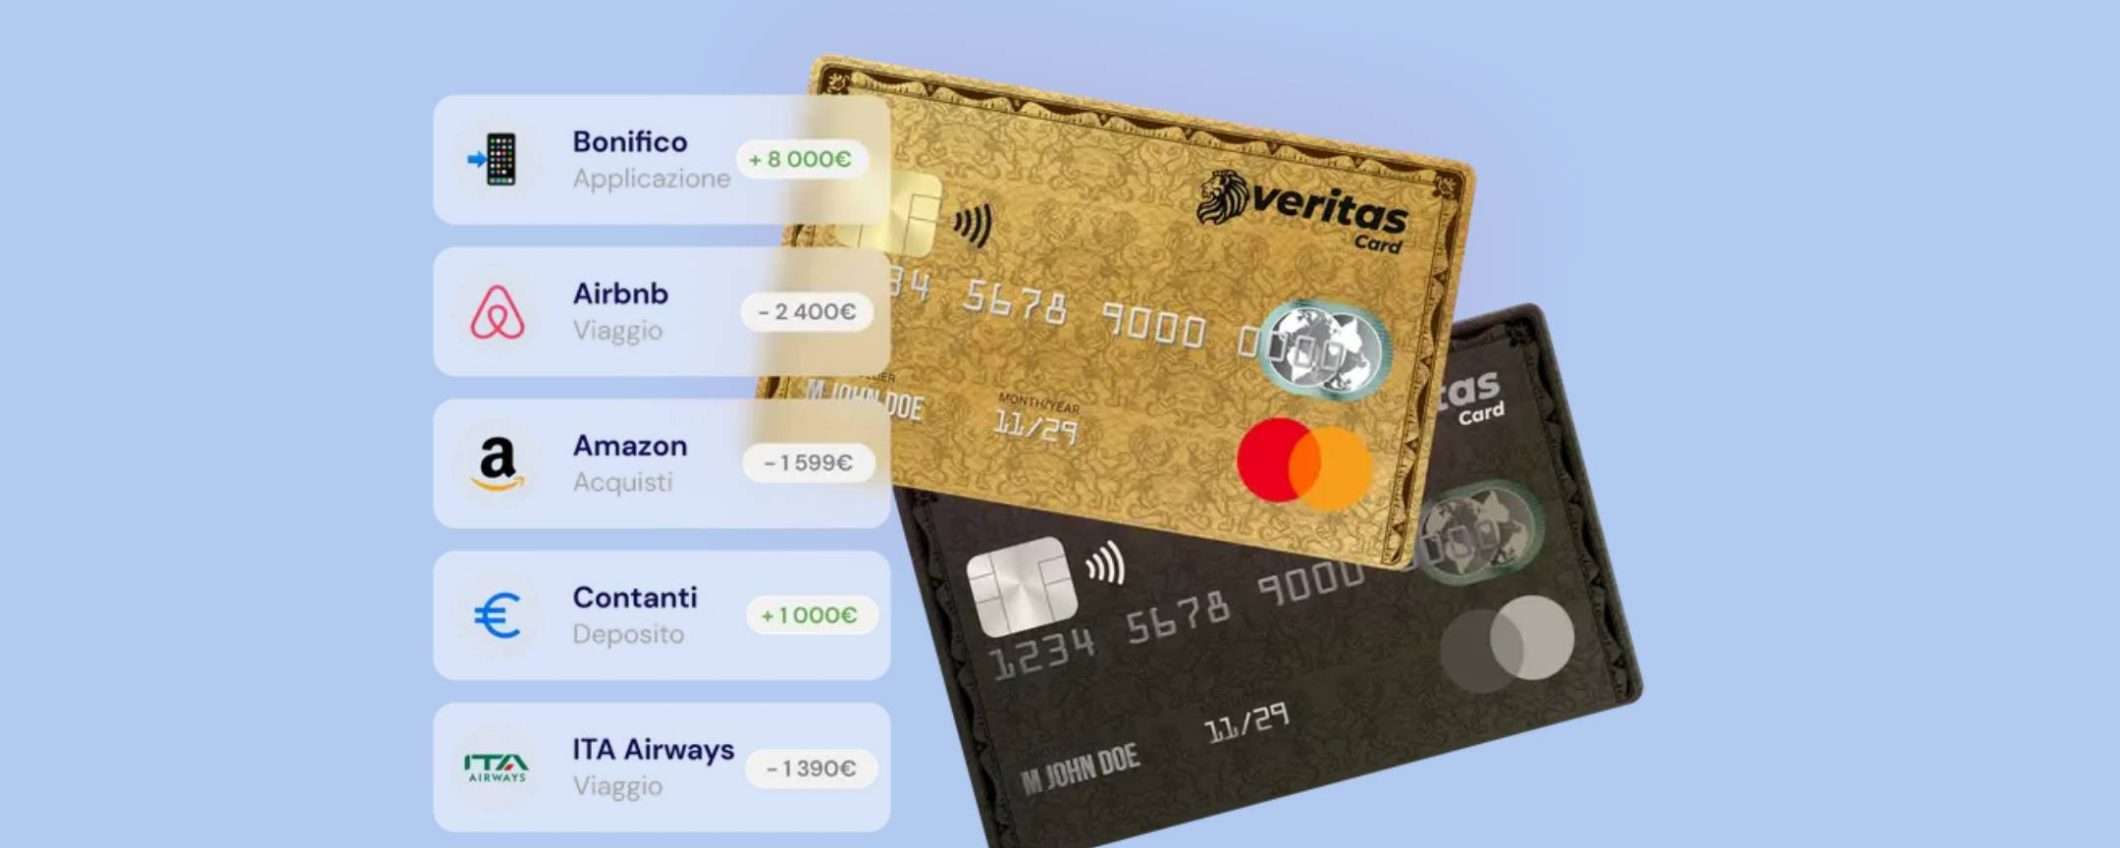 Carta Veritas: Mastercard prepagata internazionale con IBAN